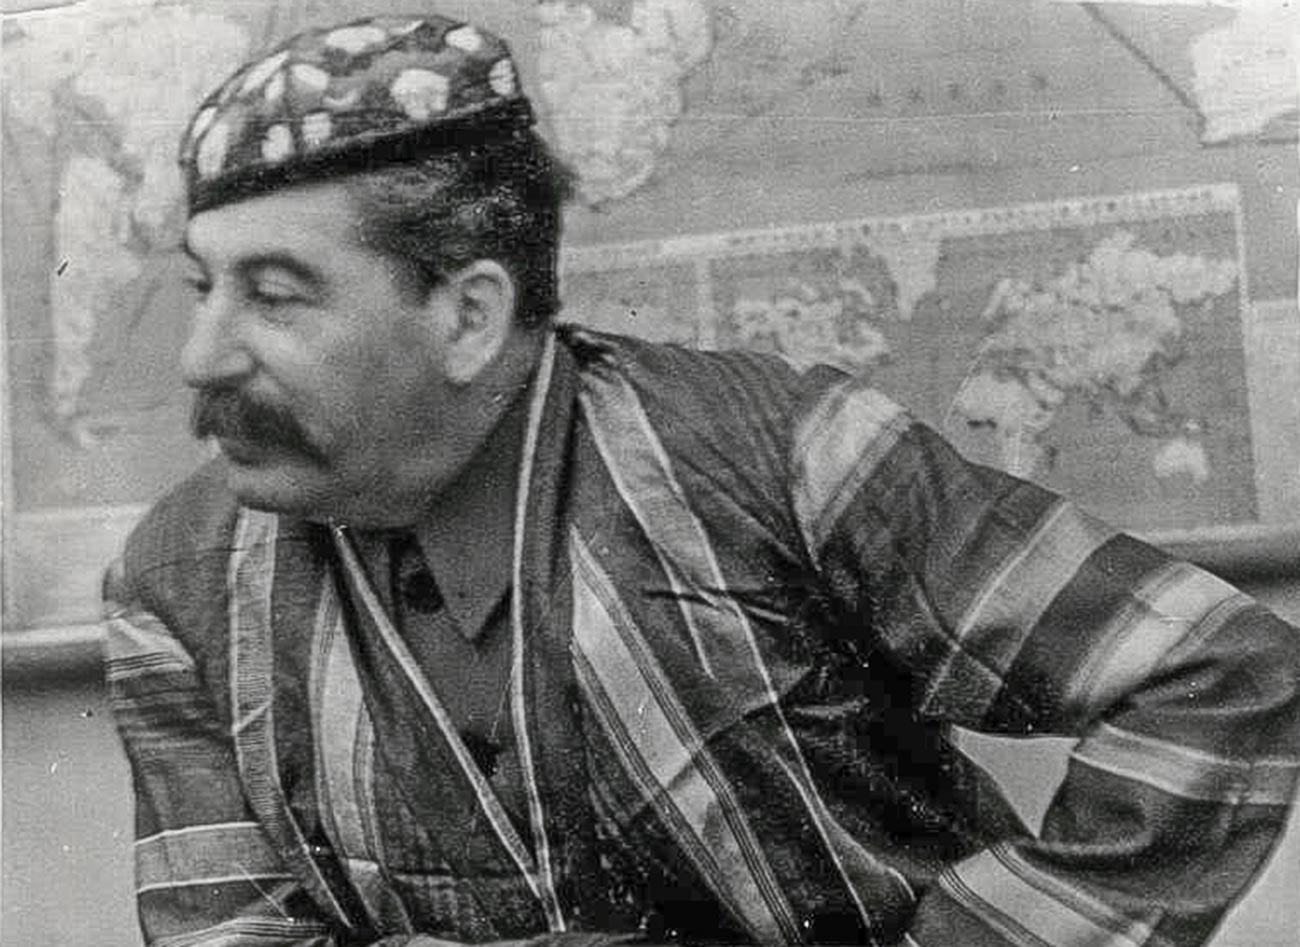 Сталин в узбекском халате и тюбетейке, 1930-е